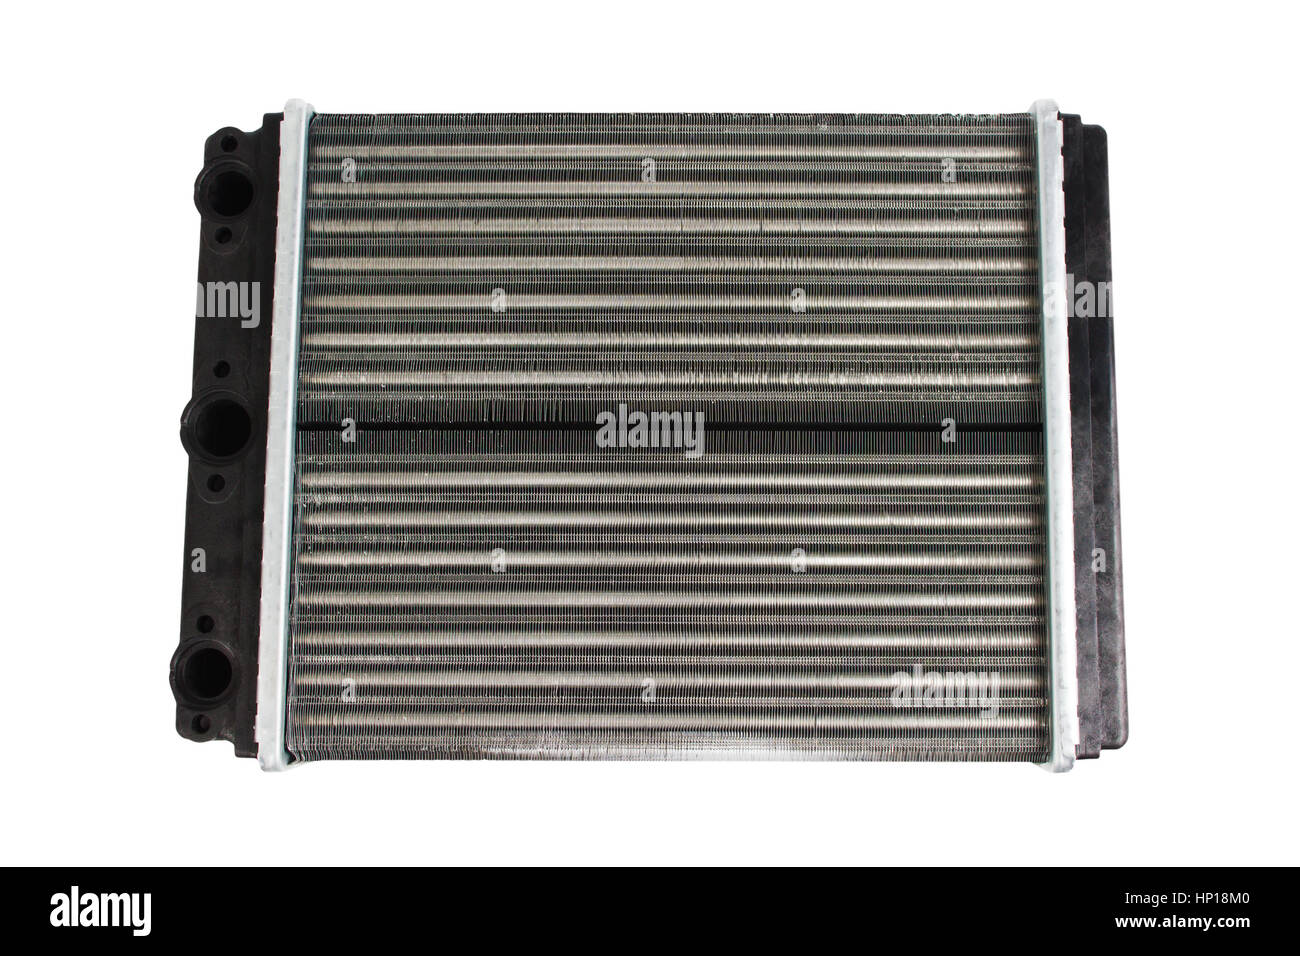 Car radiator isolated over white background Stock Photo